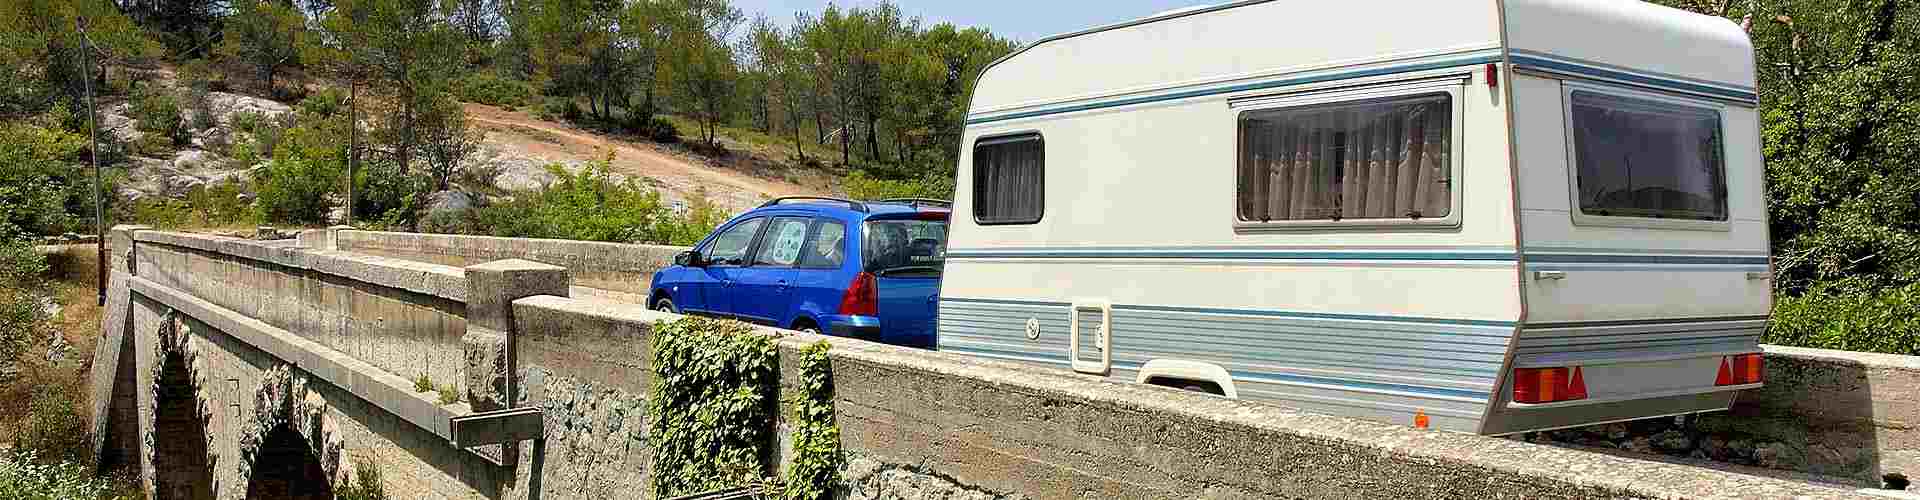 Campings y bungalows en Aragón